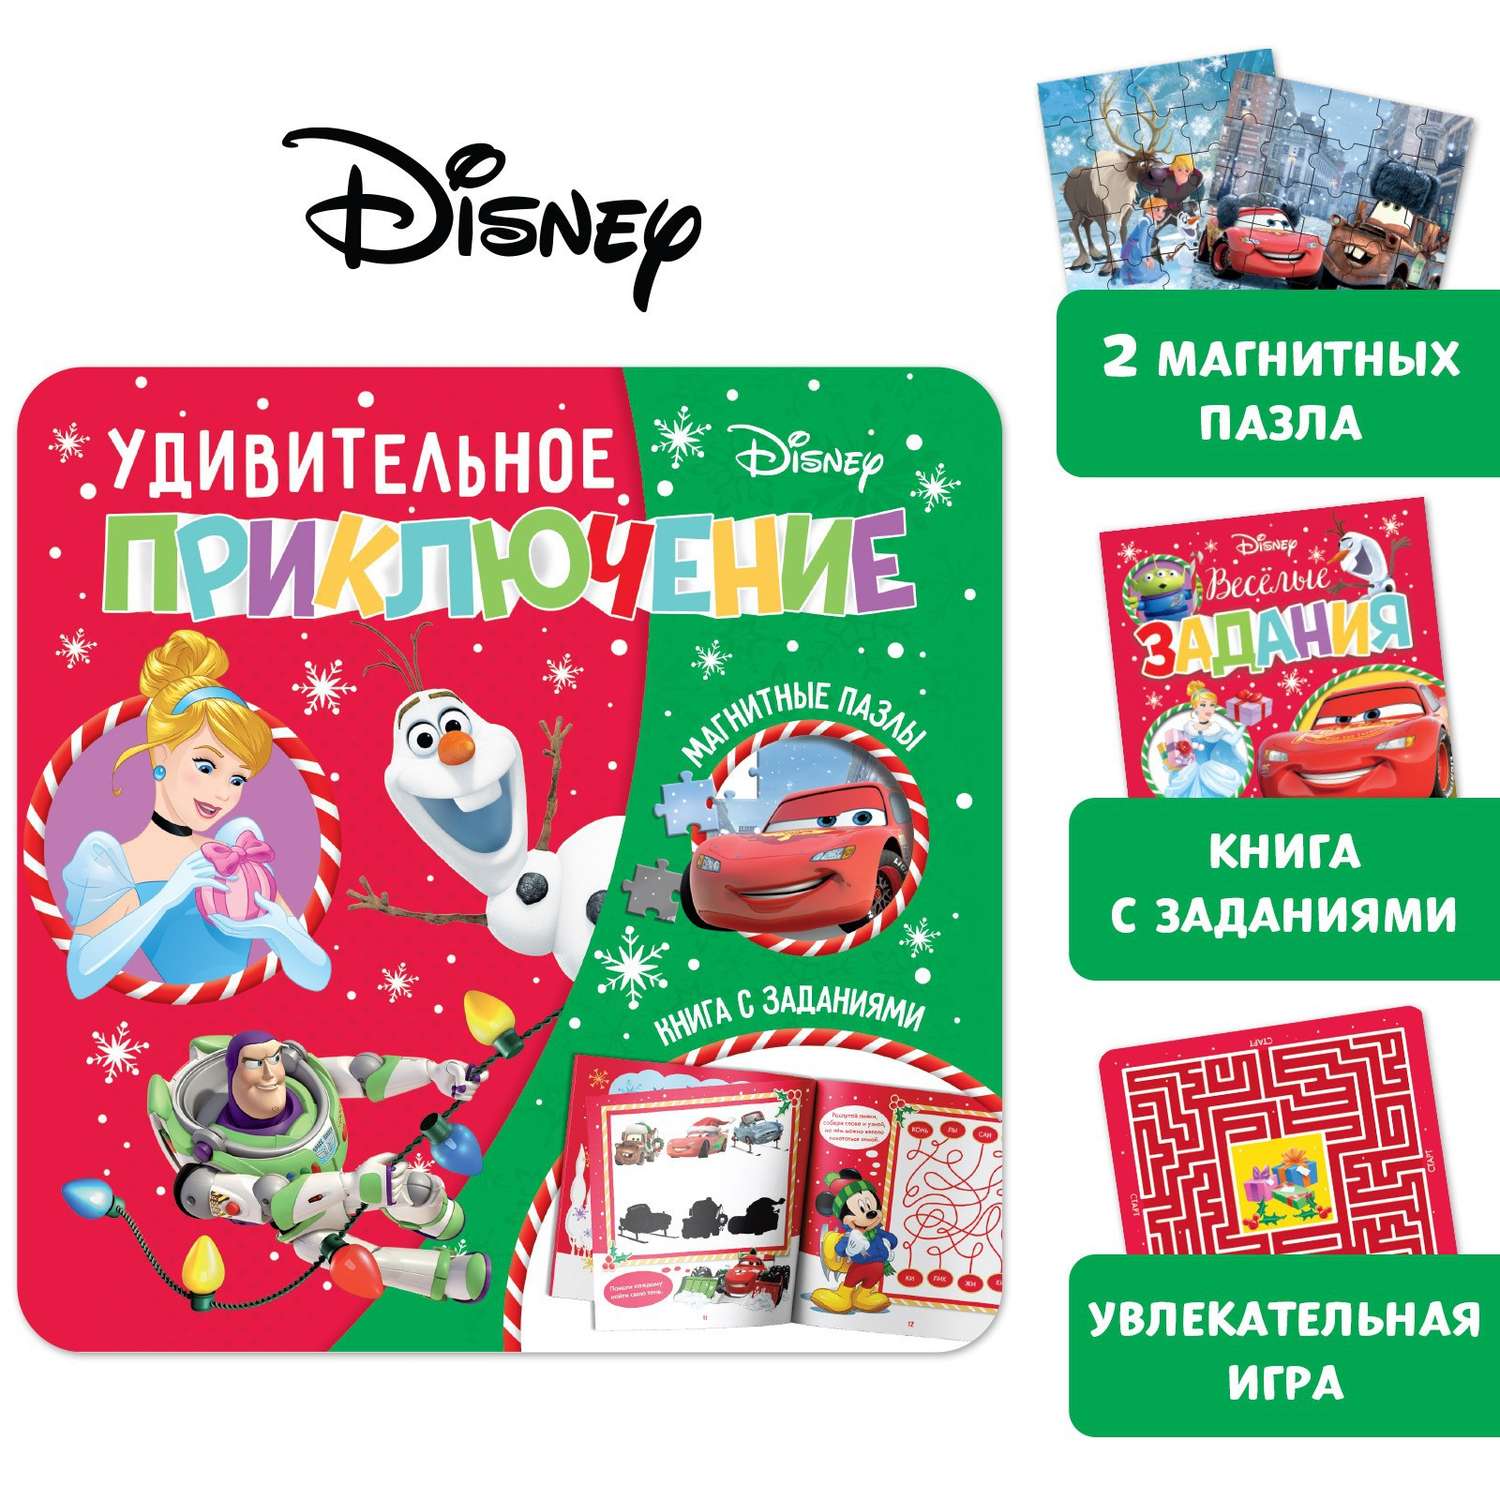 Подарочный набор Disney Магнитная книга с заданиями + пазлы + настольная игра «Удивительное приключение» Дисней - фото 1